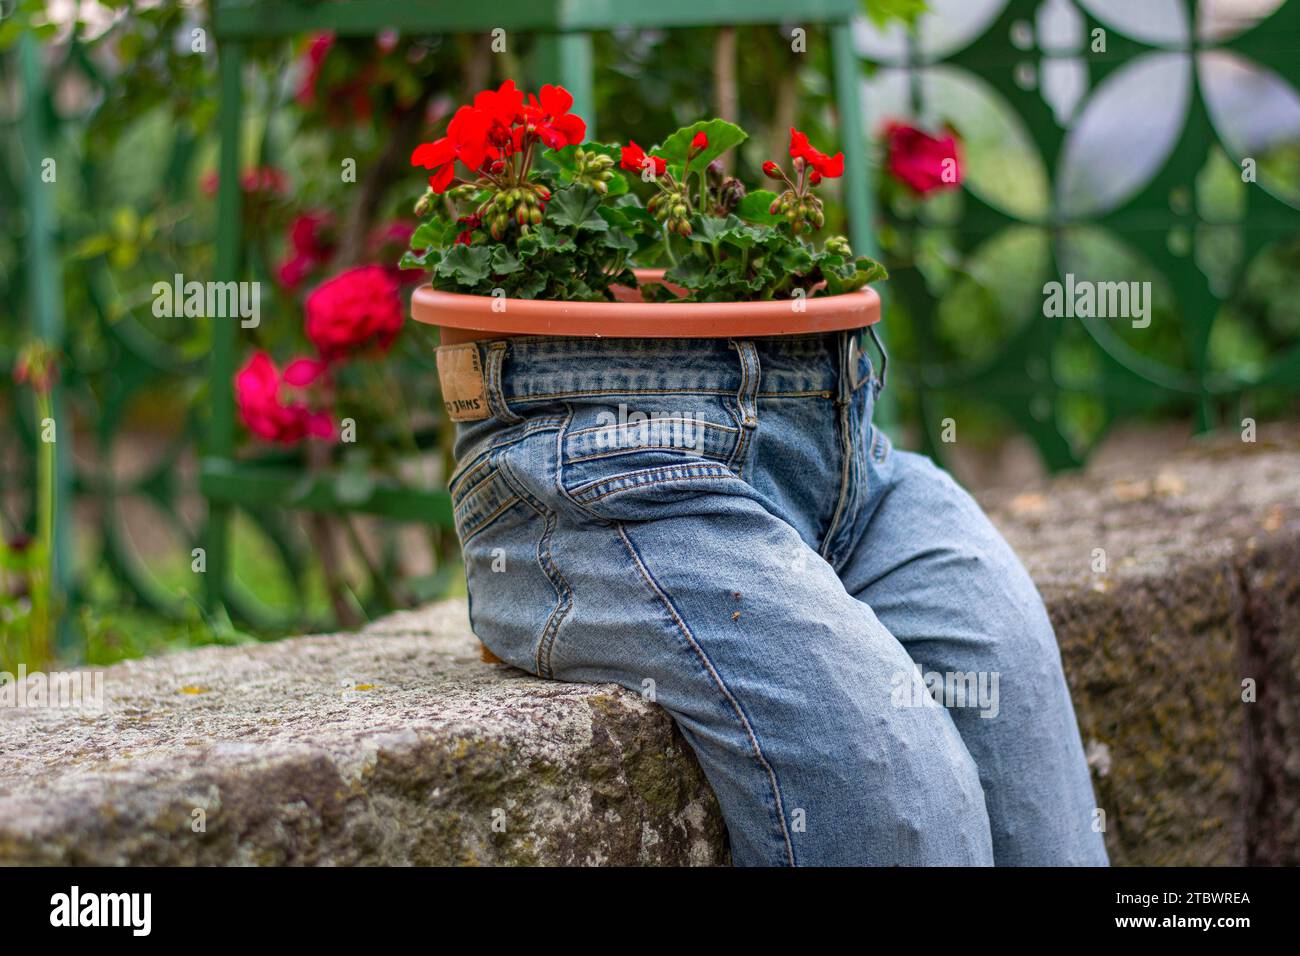 Jardinière bleu jeans avec fleurs rouge écarlate Pelargonium peltatum. Décoration de jardin vintage Banque D'Images